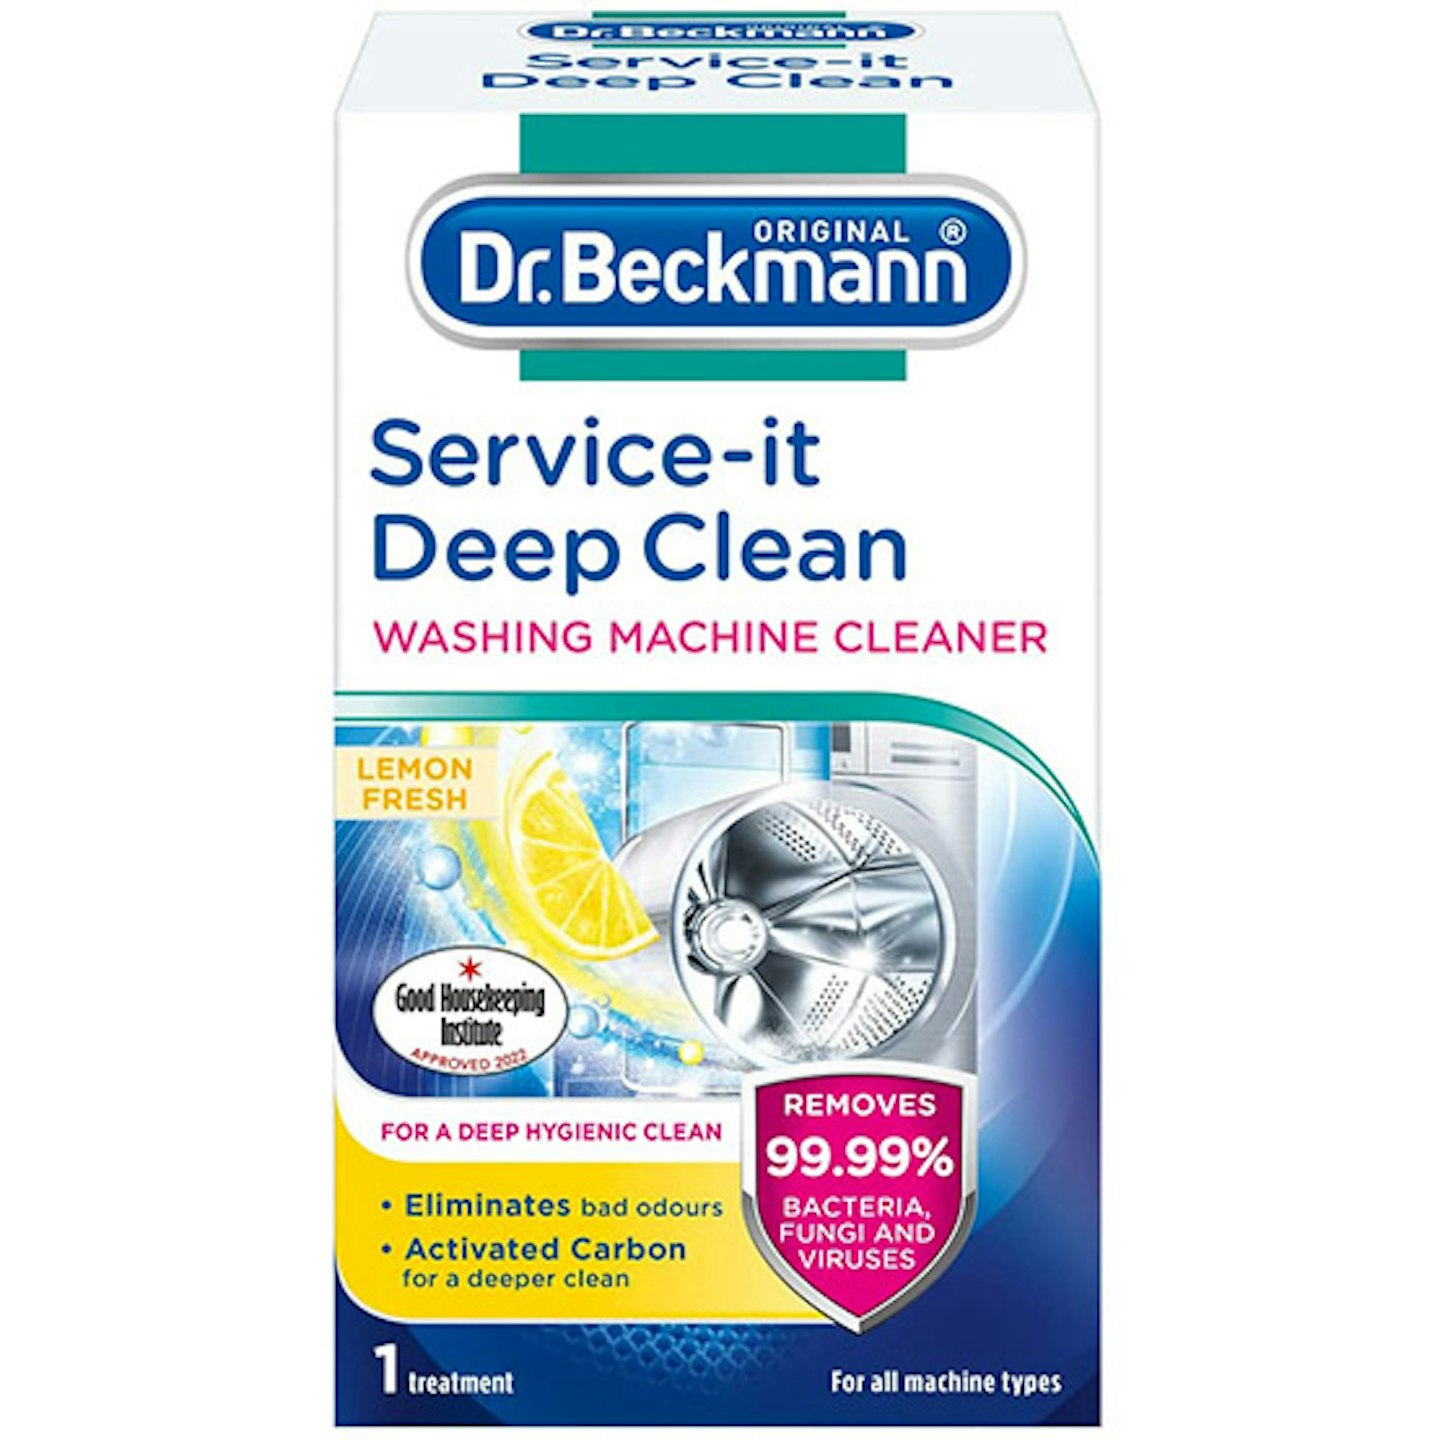 Dr. Beckmann Service-it Deep Clean Washing Machine